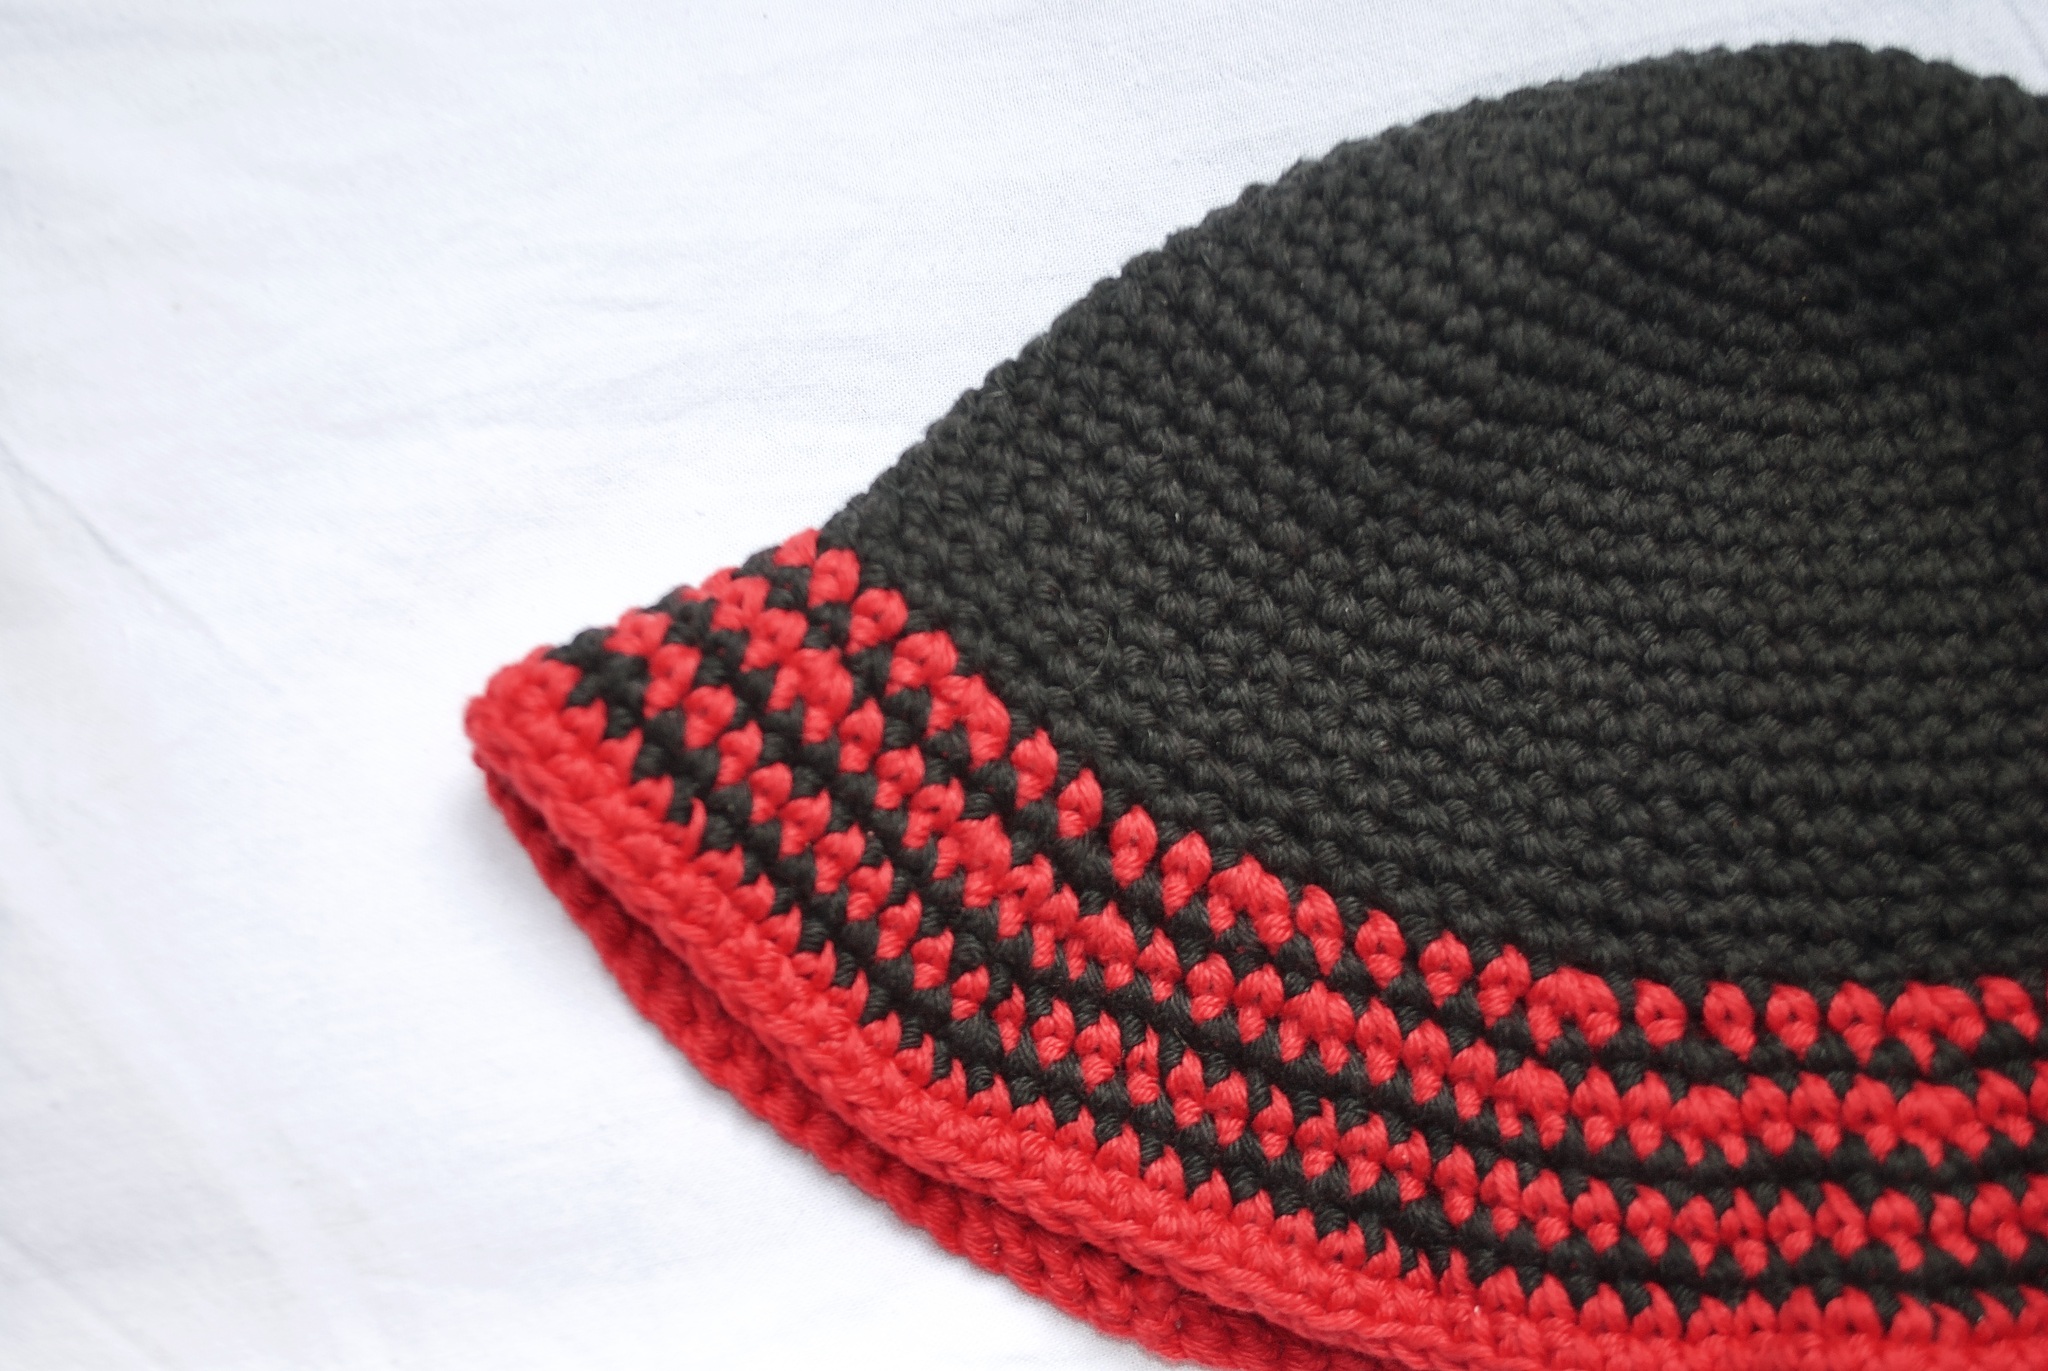 Svart og rød stripet hatt